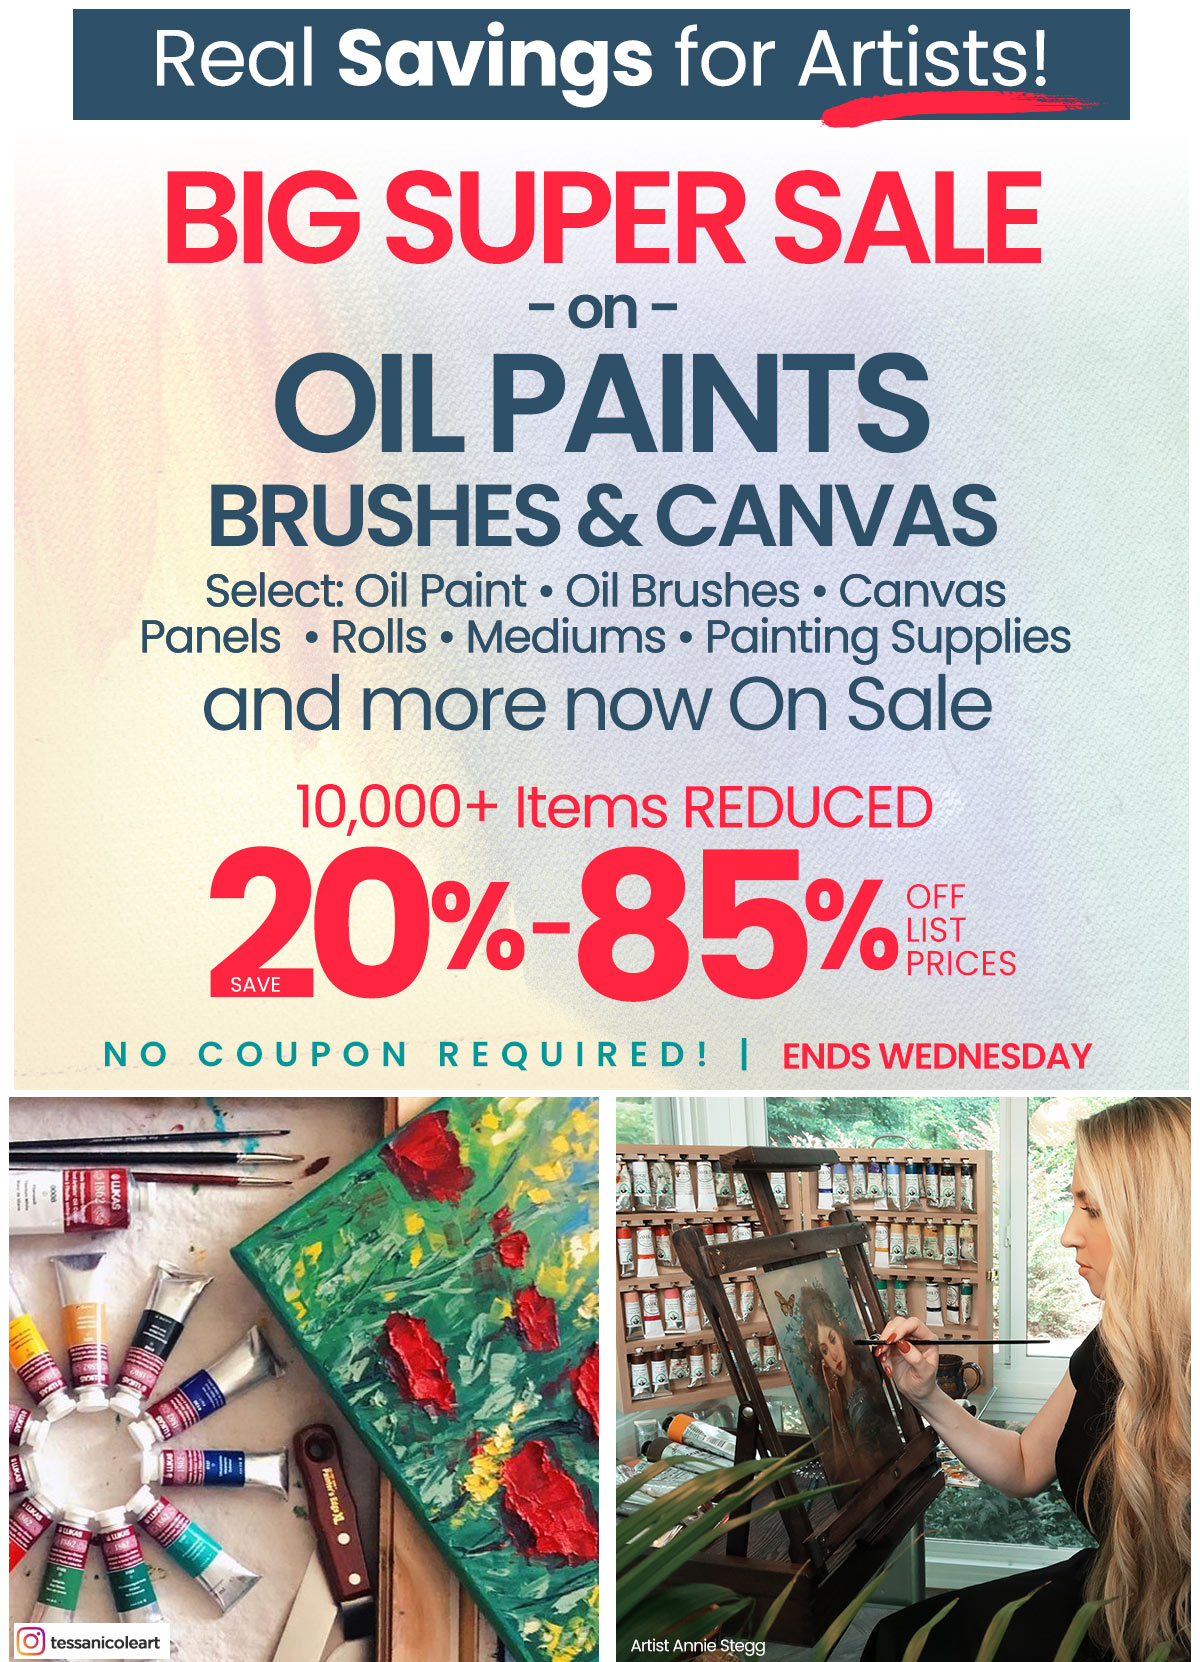 Big Super Sale On Oil Paints, Brushes & Canvas